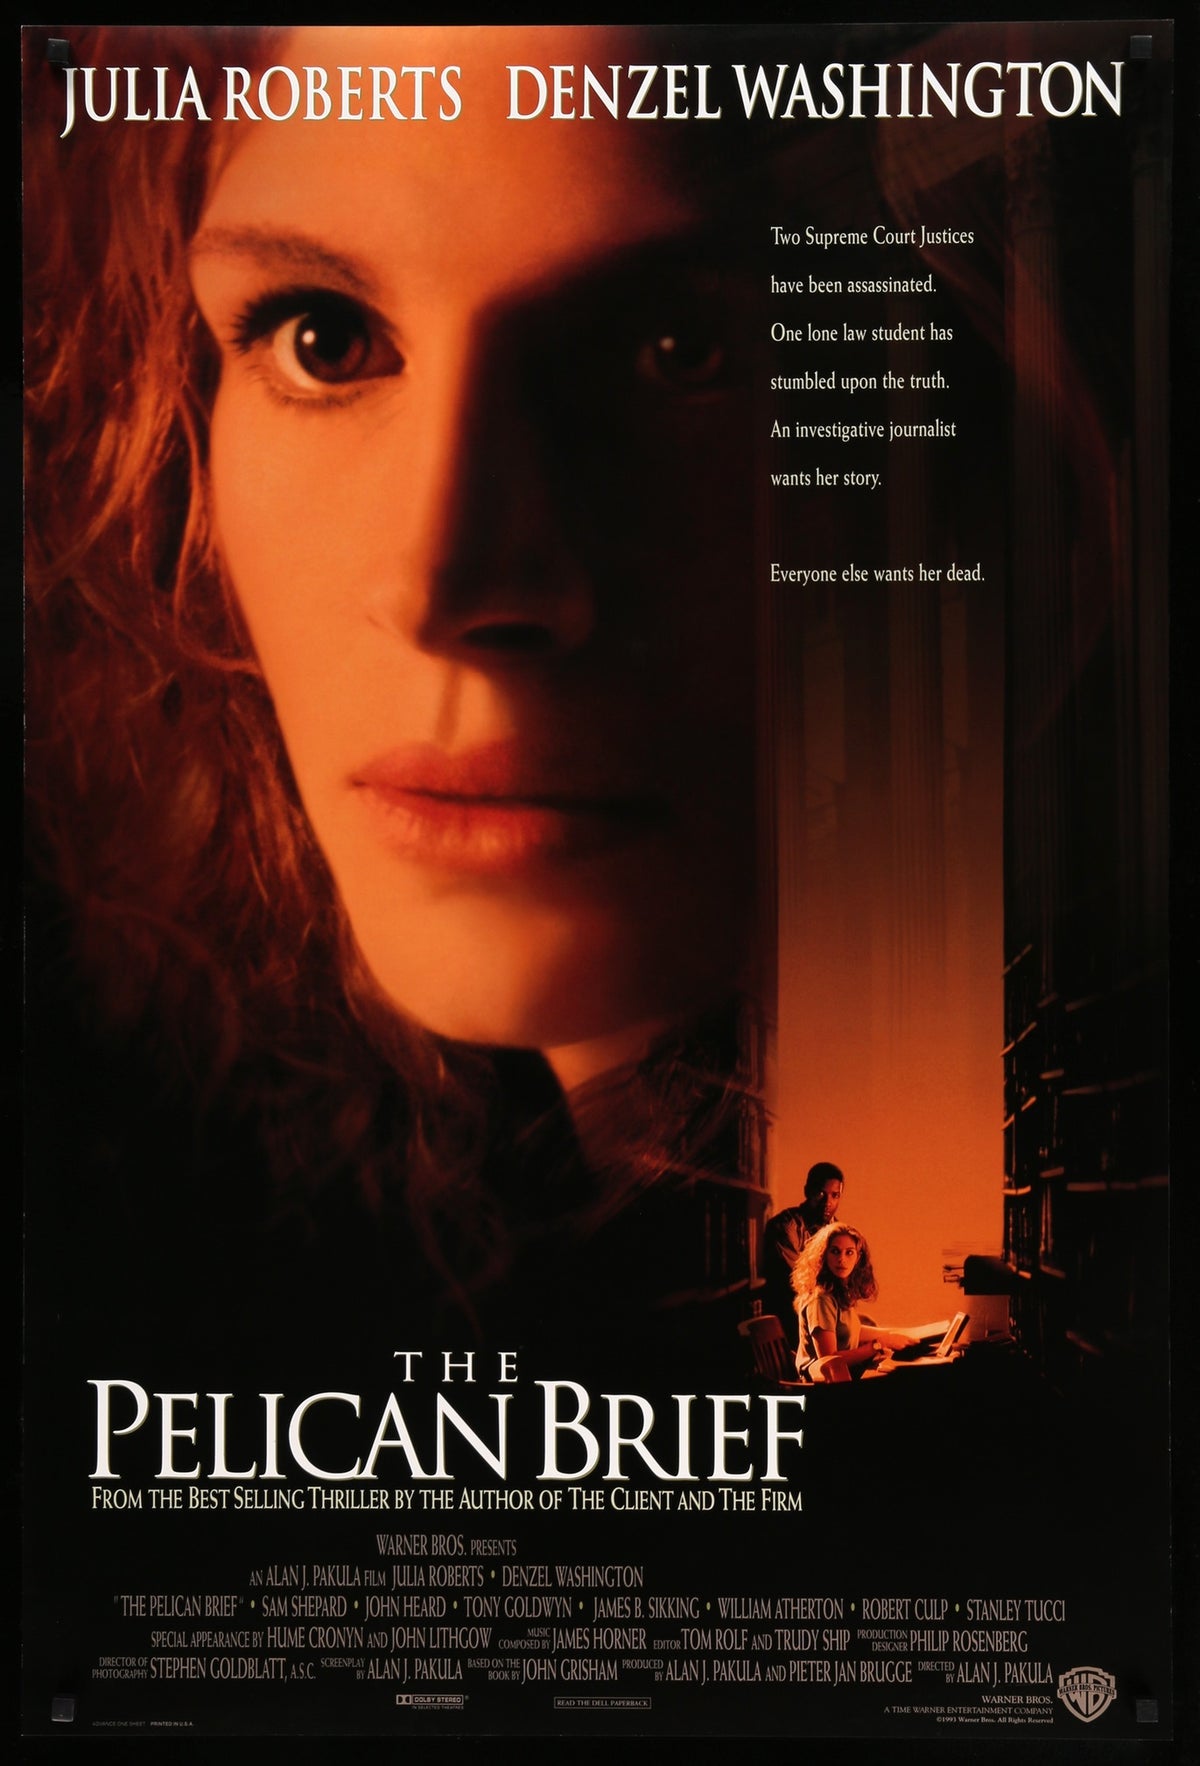 Pelican Brief (1993) original movie poster for sale at Original Film Art